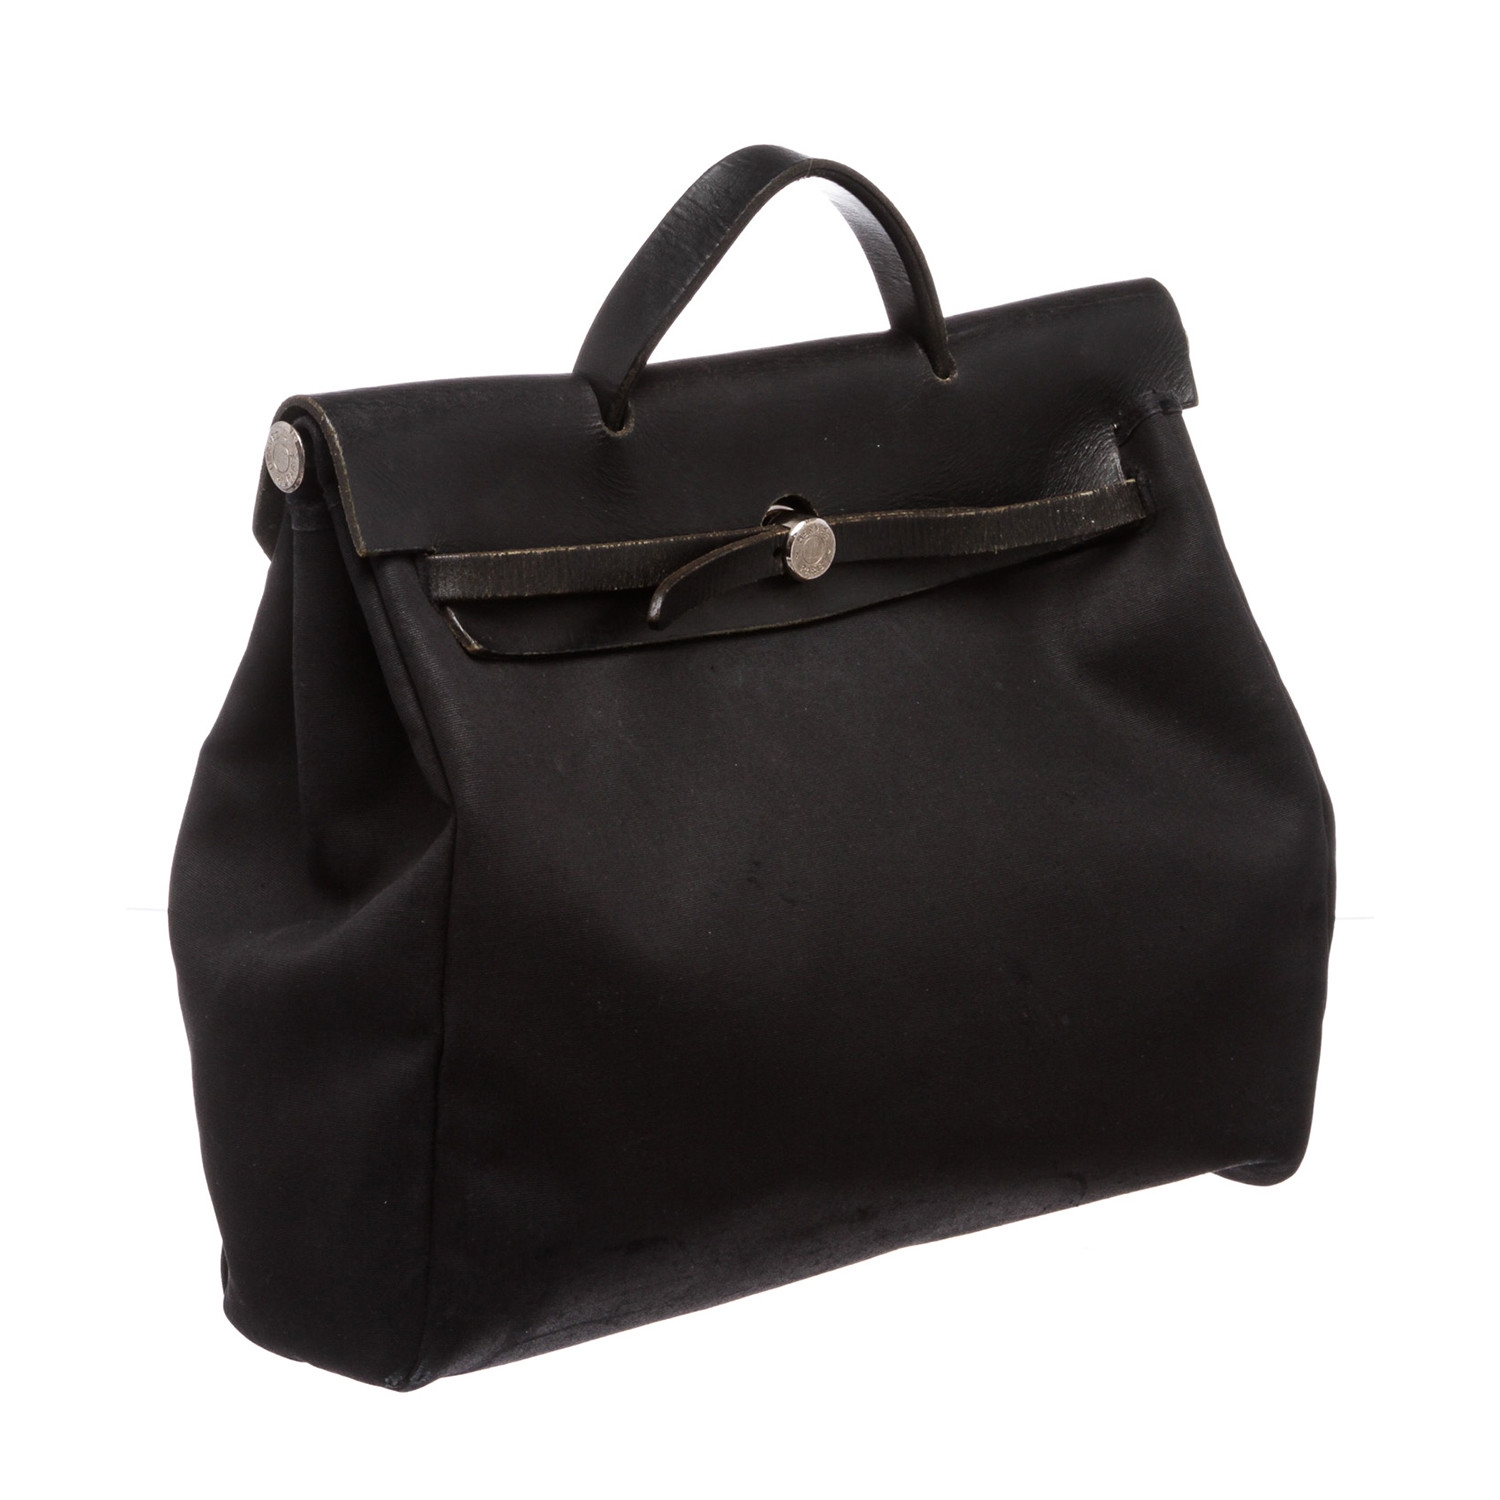 Coated Canvas Leather Herbag MM Travel Bag // Black + Beige